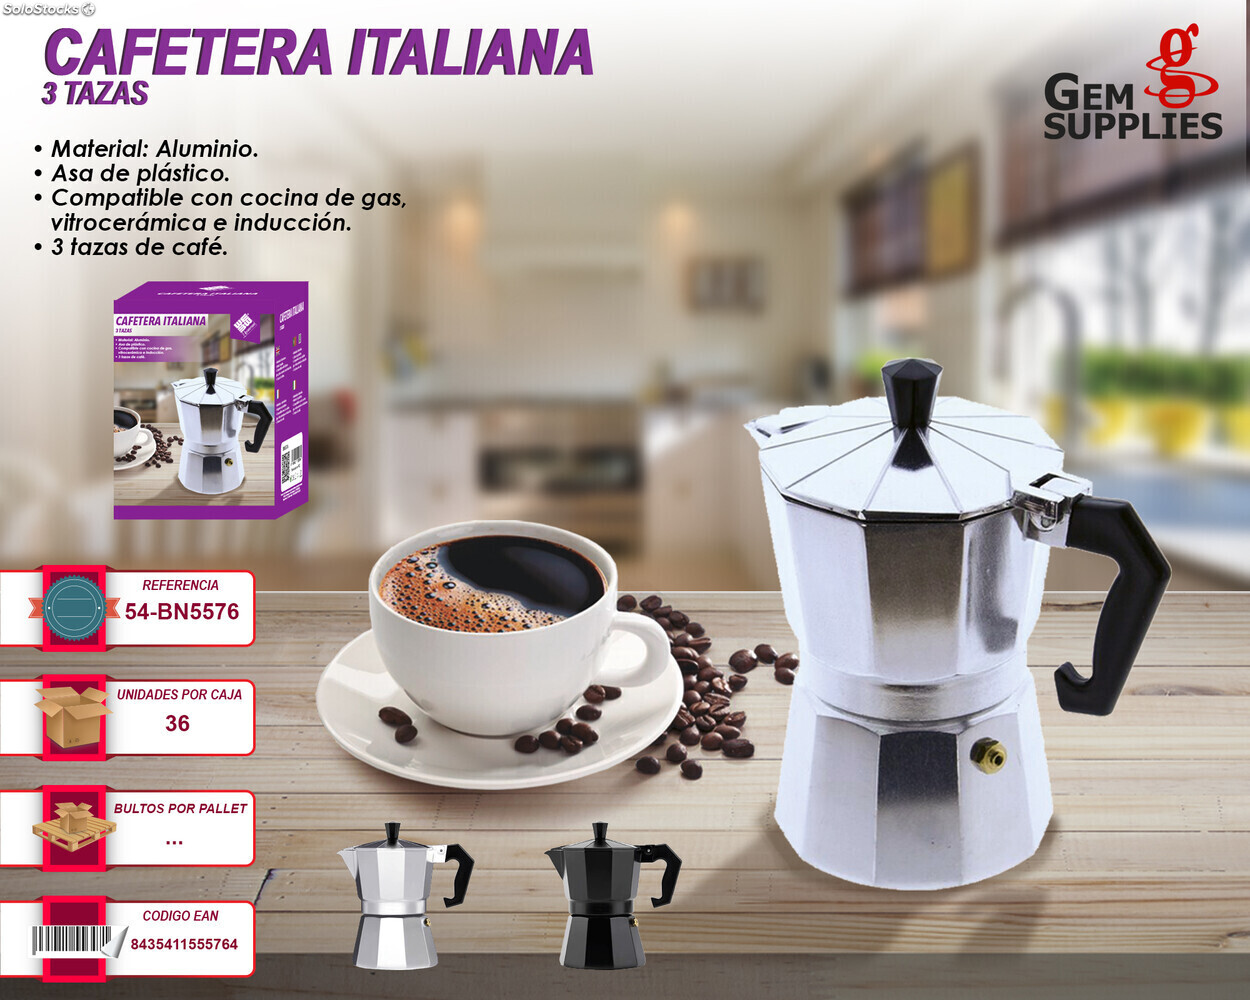 Cafetera Italiana en acero inoxidable 9 tazas Compatible con gas